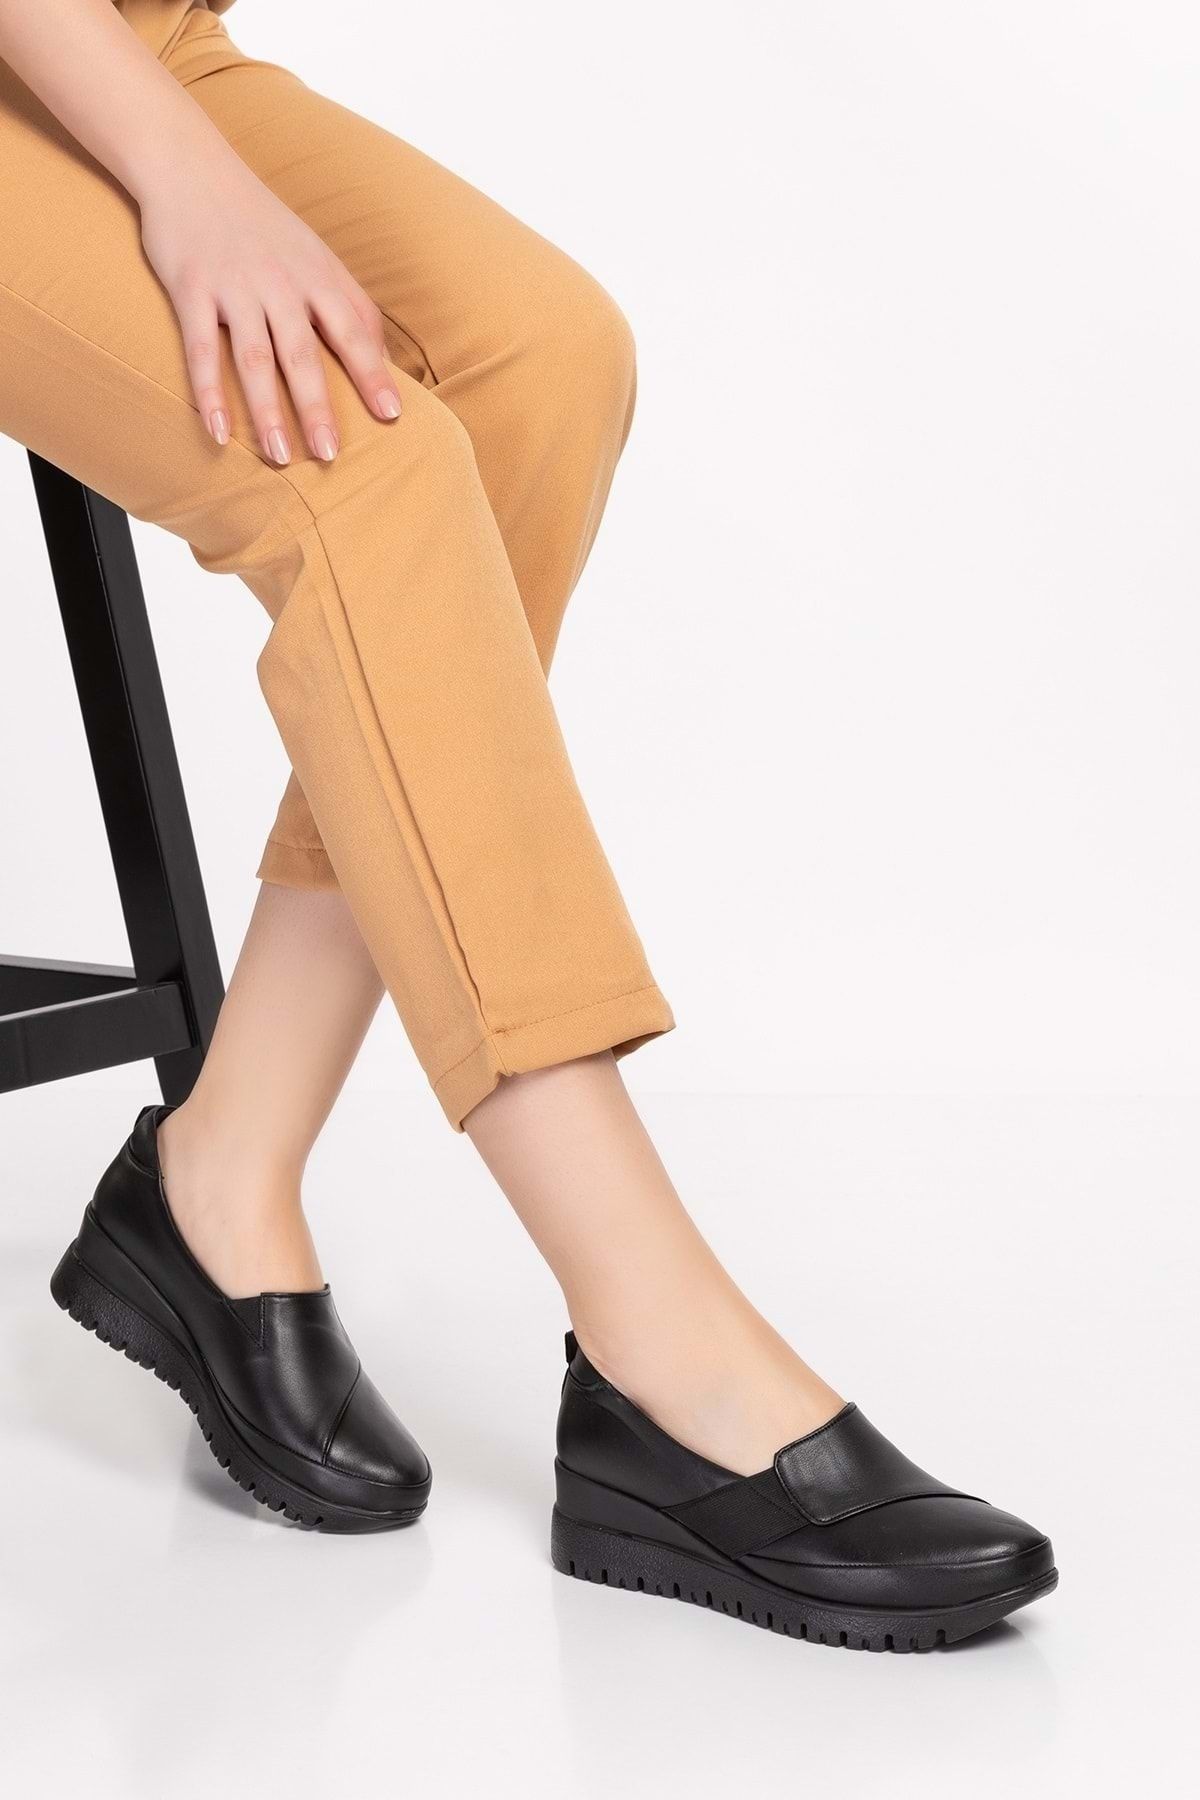 Gondol Kadın Hakiki Deri Anatomik Taban Dolgu Topuklu Günlük Ayakkabı Pyt.6205 - Siyah - 38